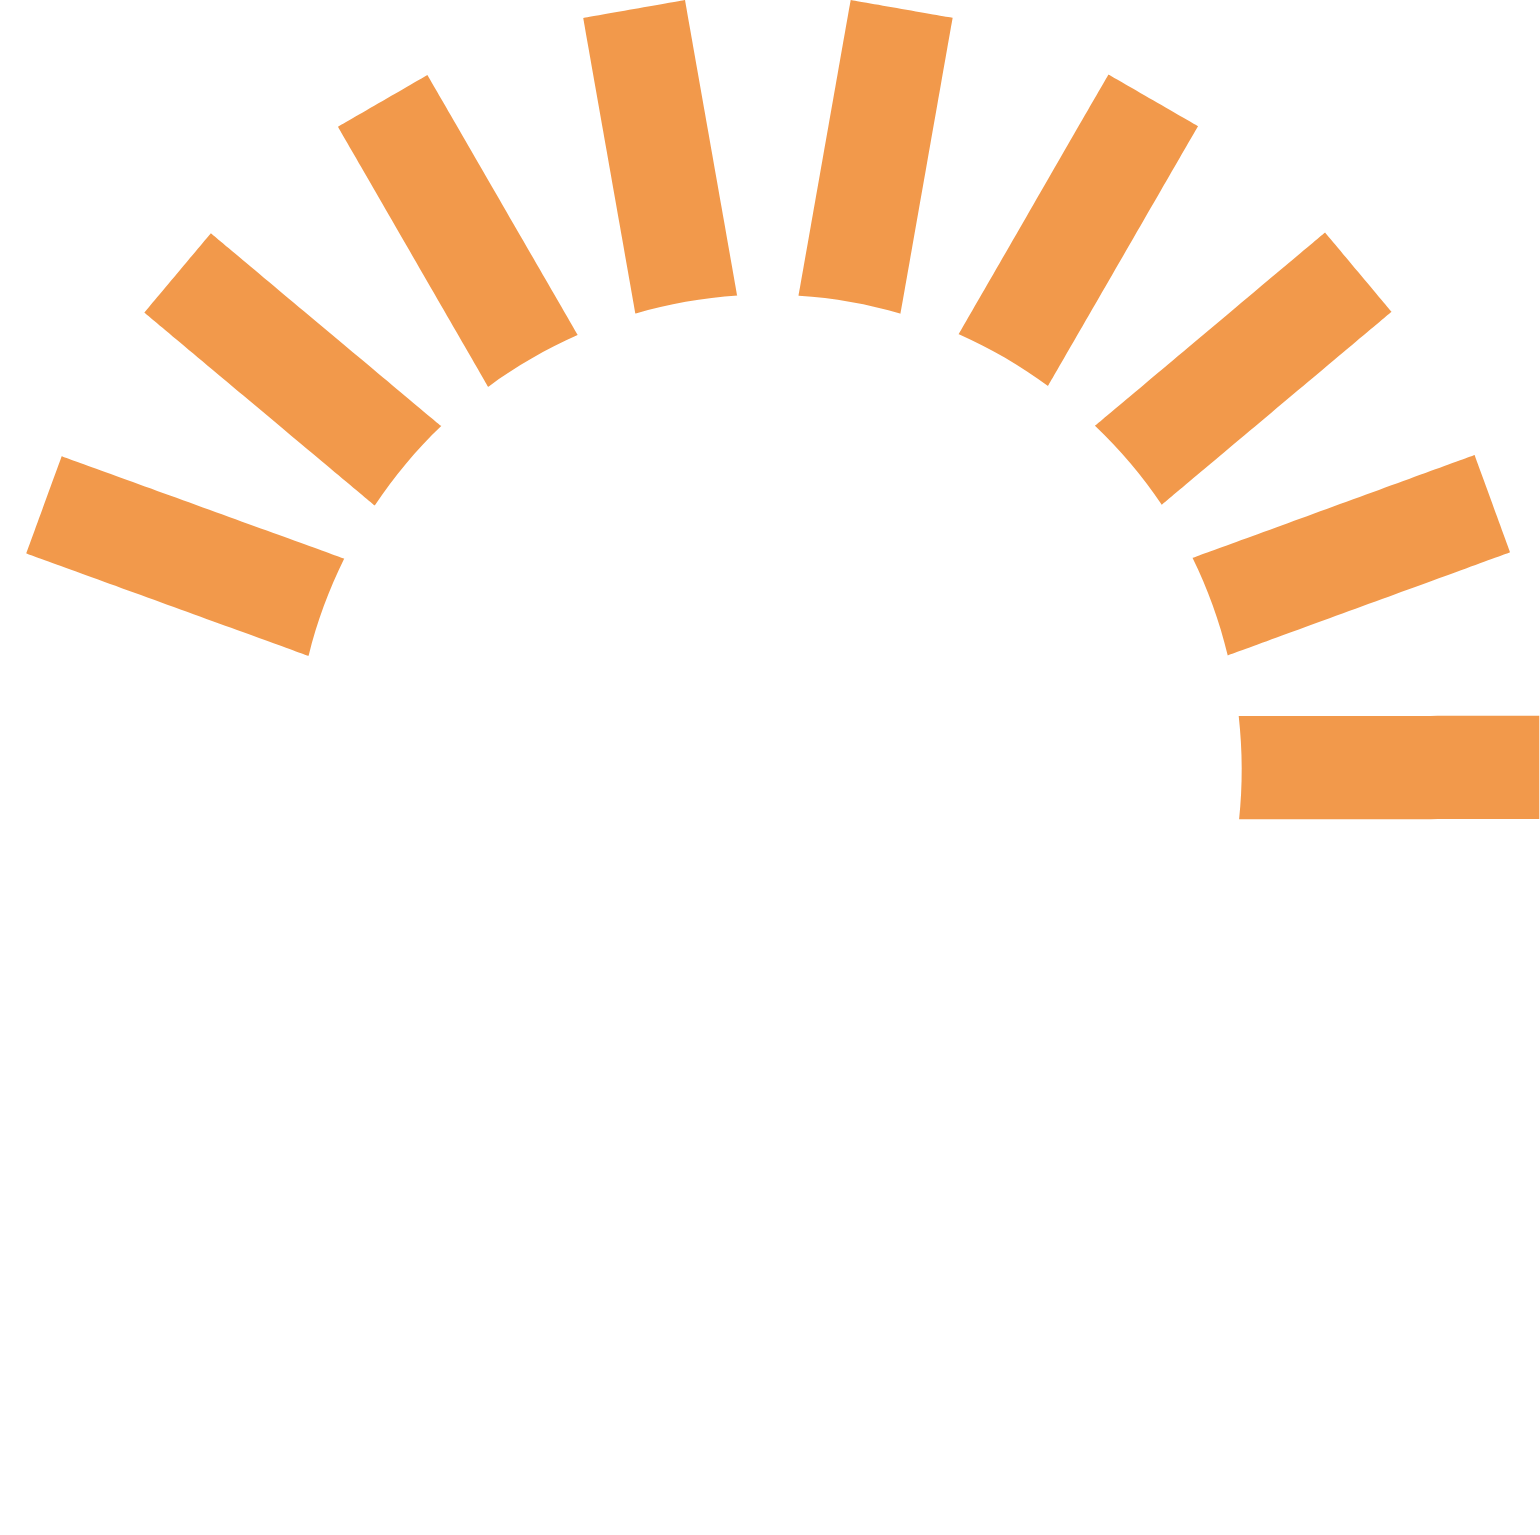 Boss Energy logo pour fonds sombres (PNG transparent)